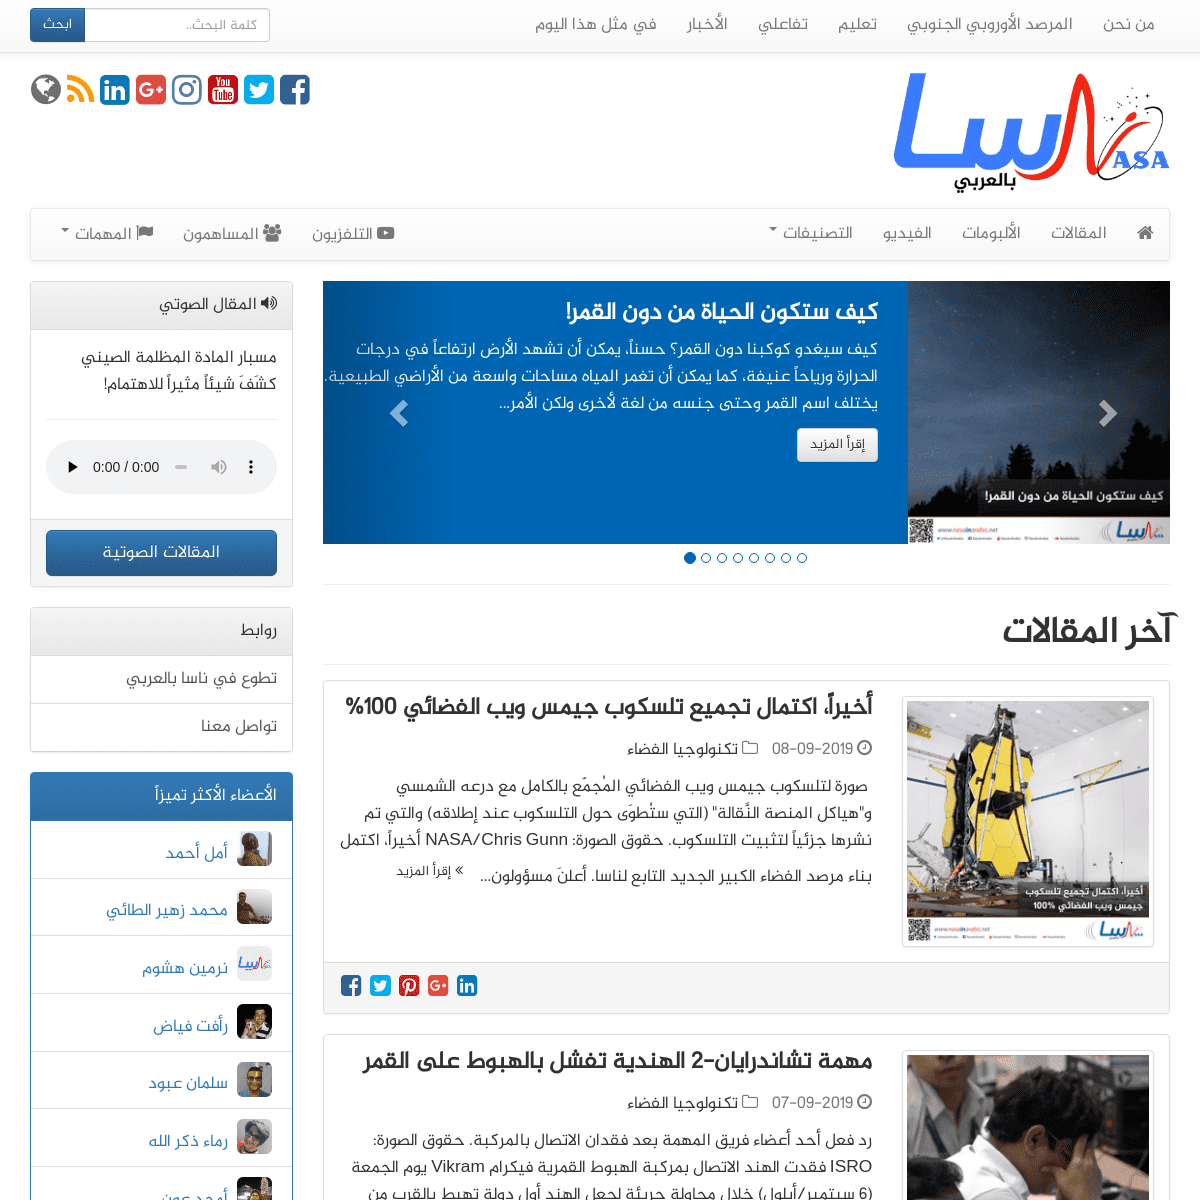 ناسا بالعربي - نبدأ بترجمة العلم ونشره، لننتهي بصناعته